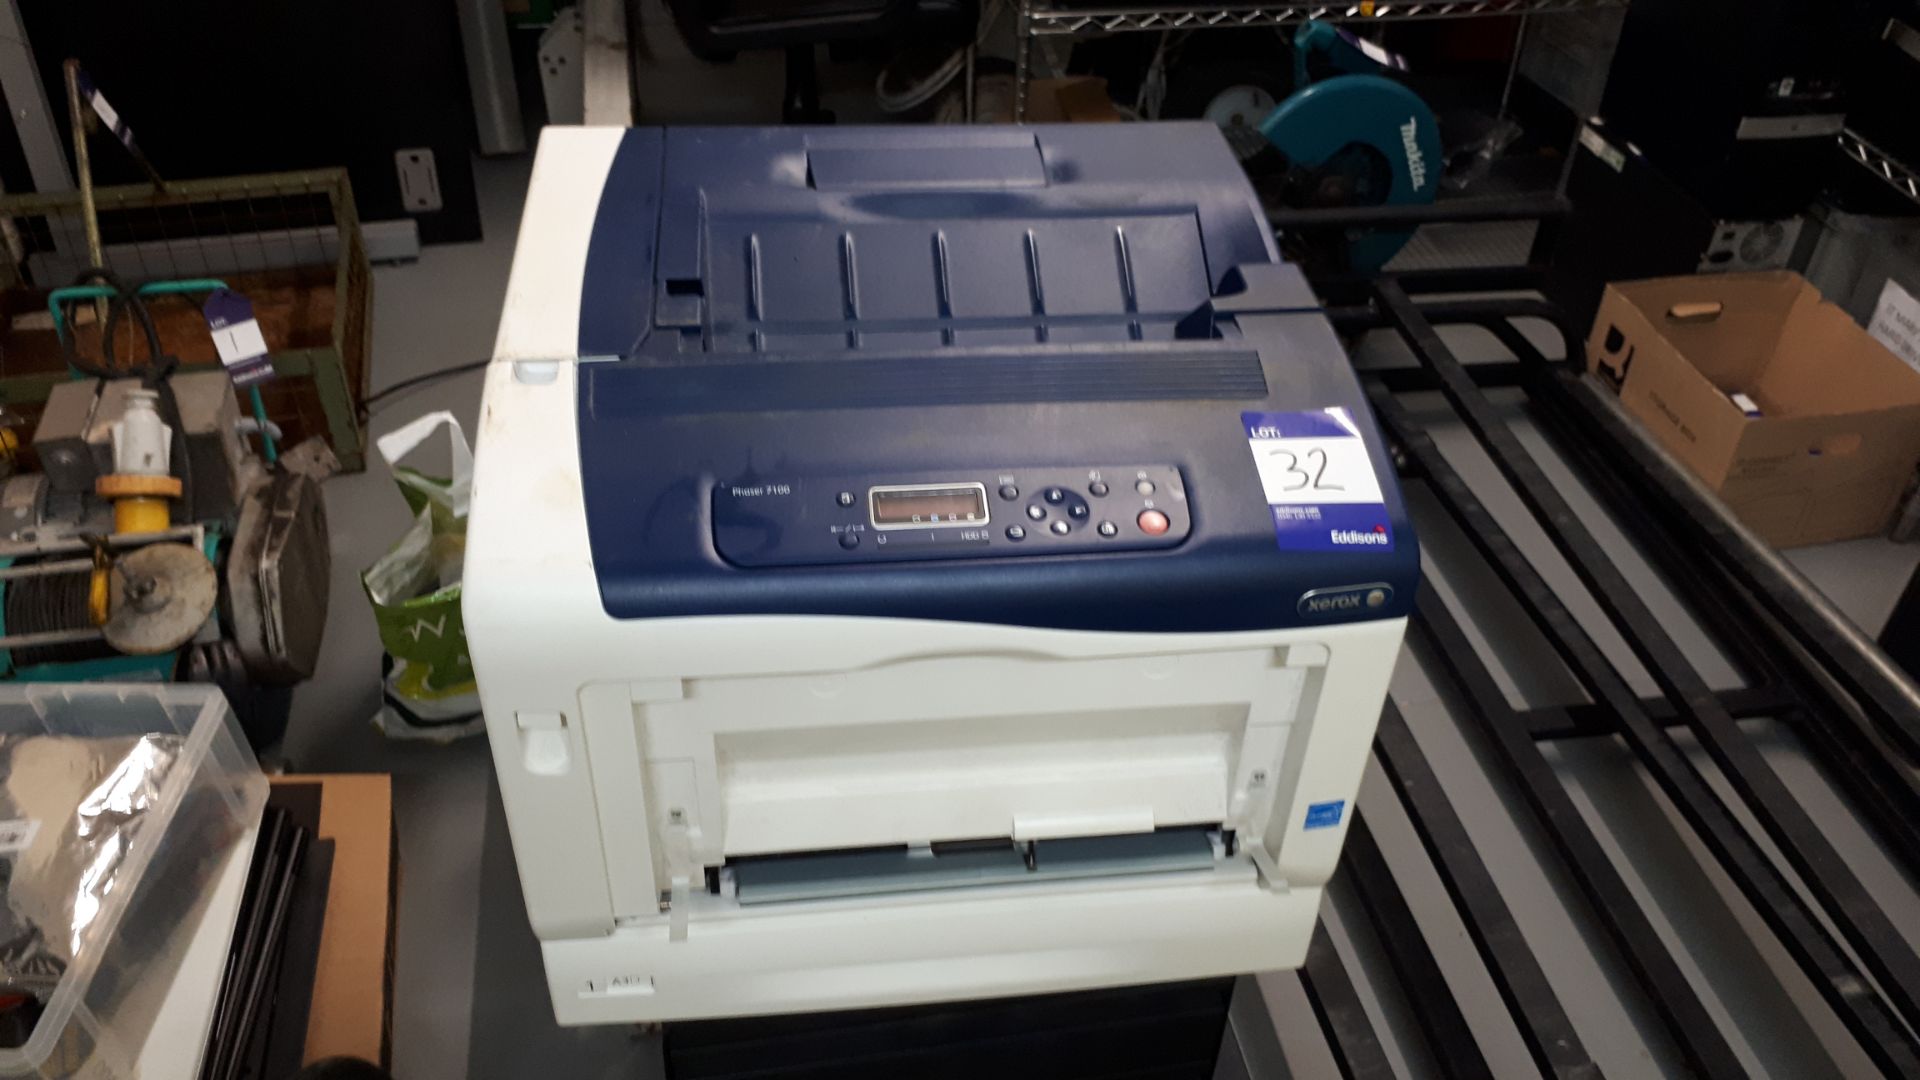 Xerox Phaser 7100 printer